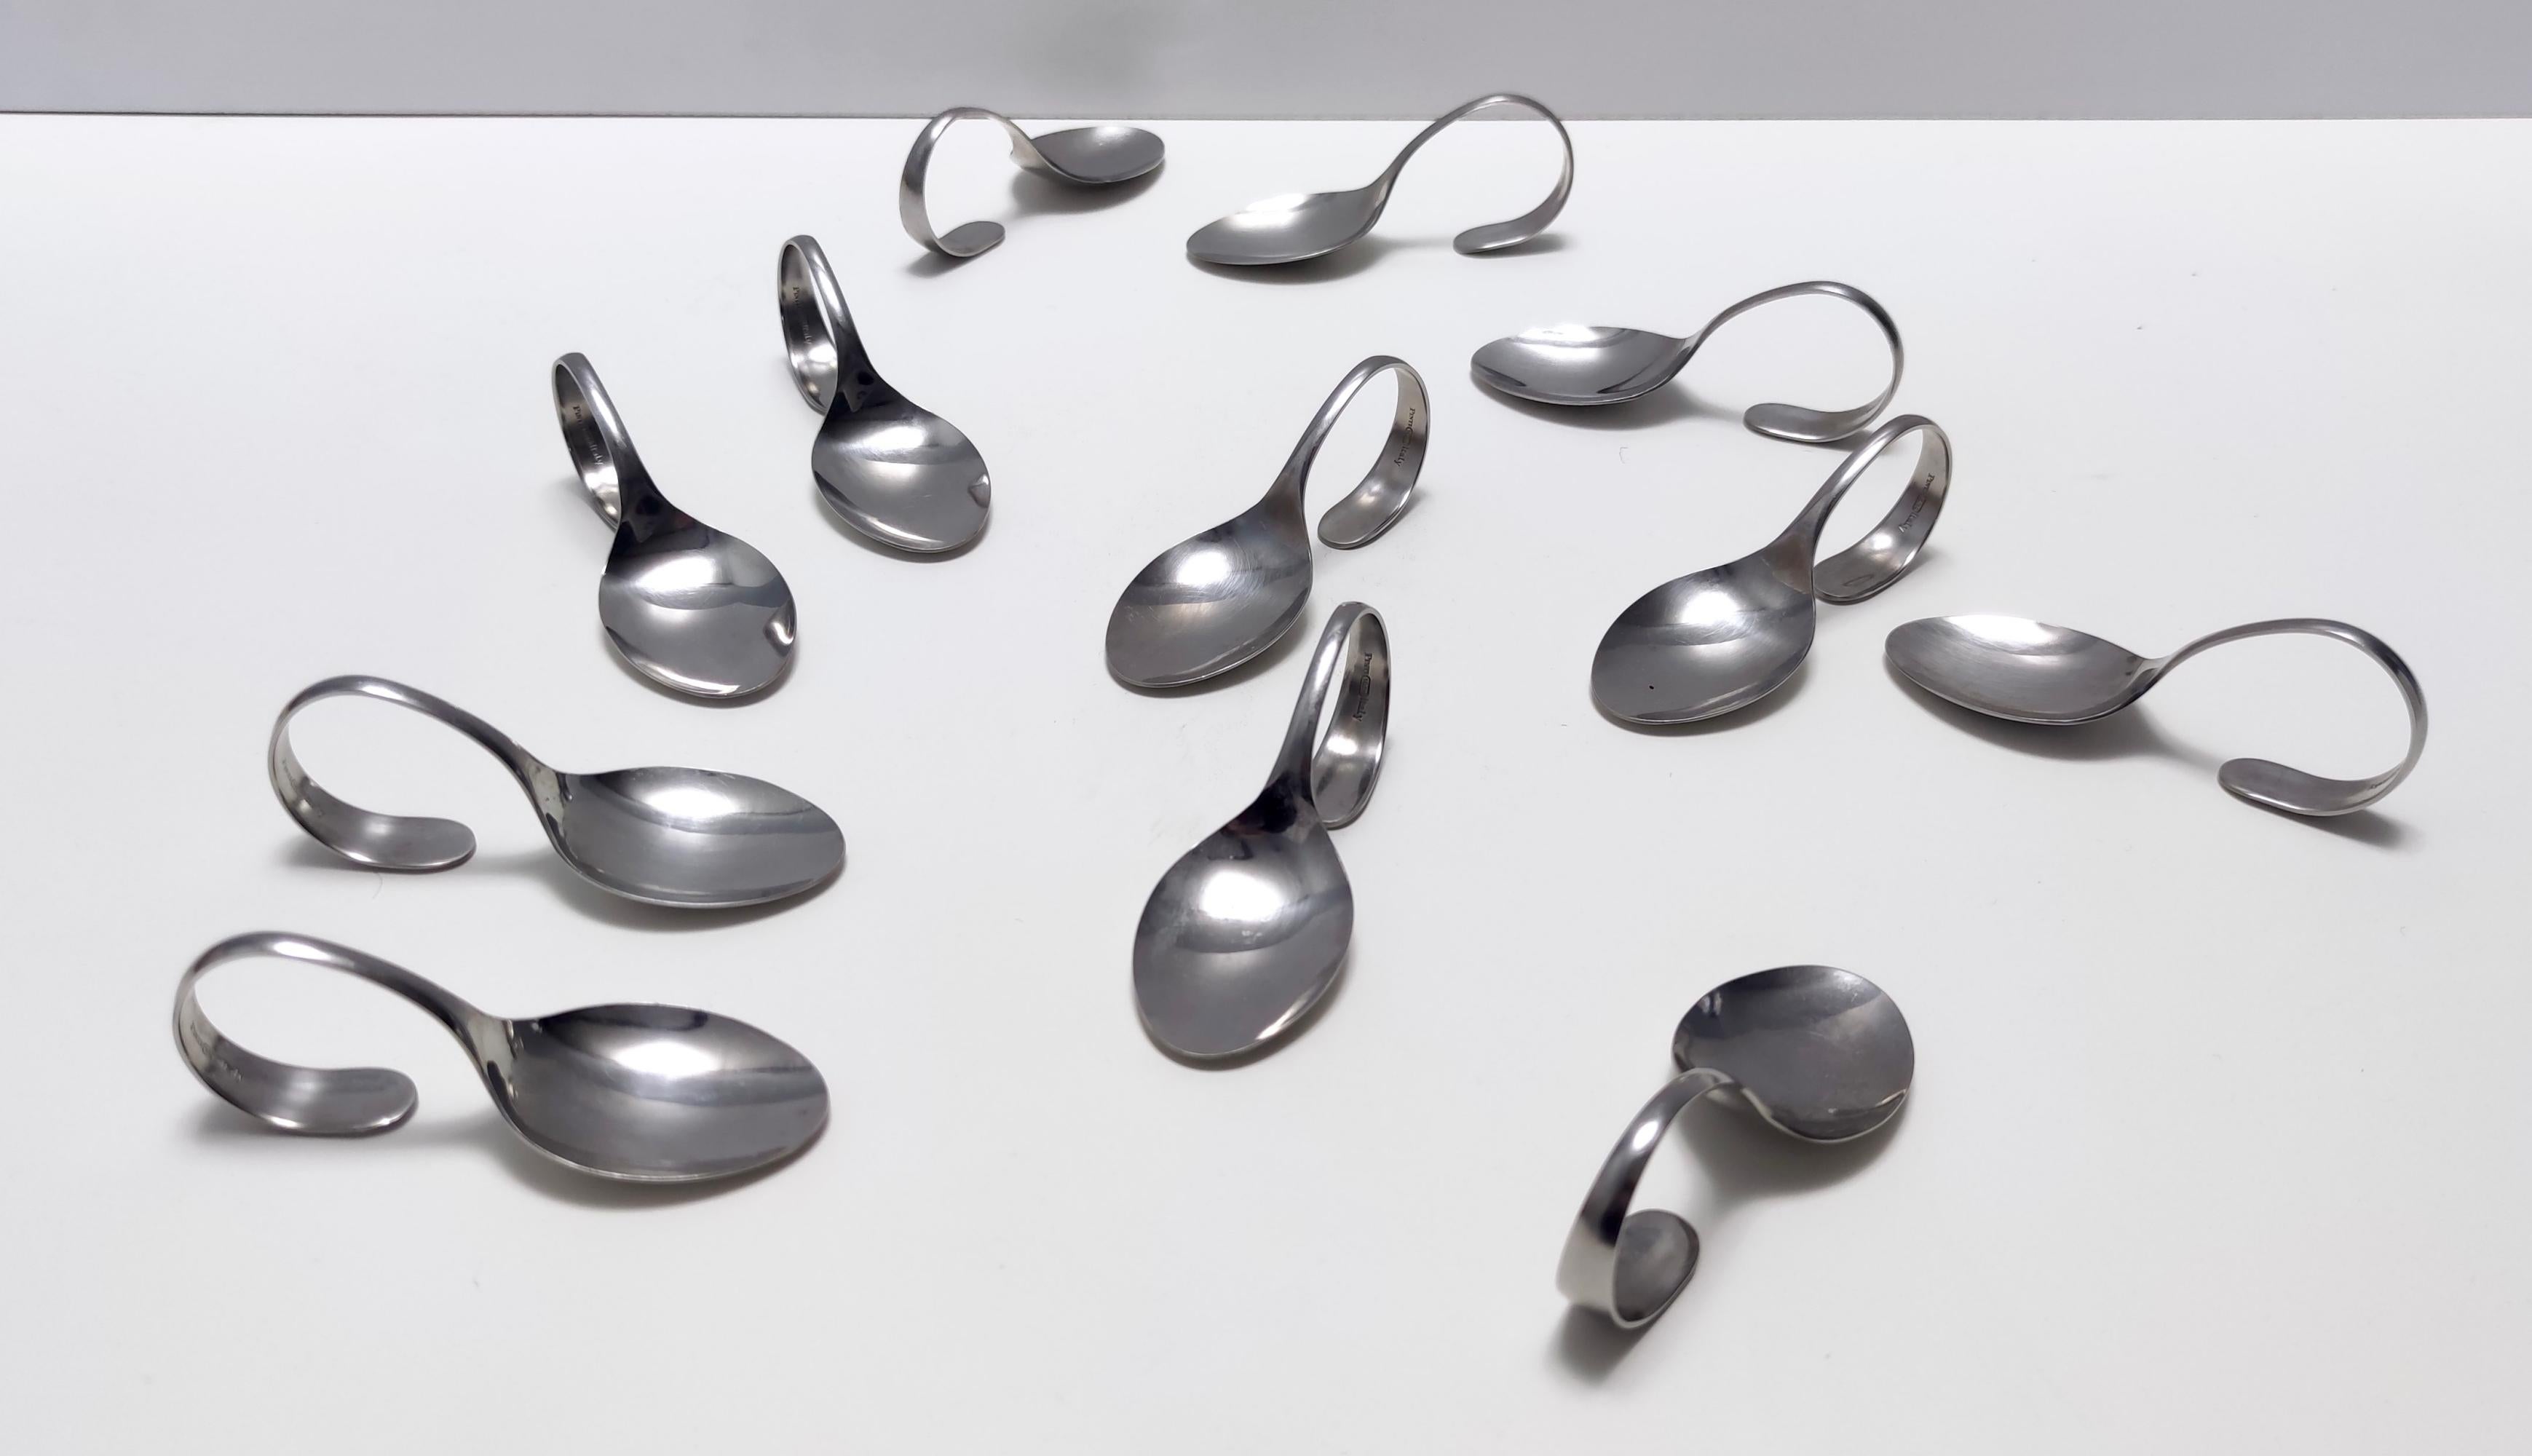 Postmodern Set of Twelve Steel Serving Spoon by Pinti, Italy, 1980s For Sale 1